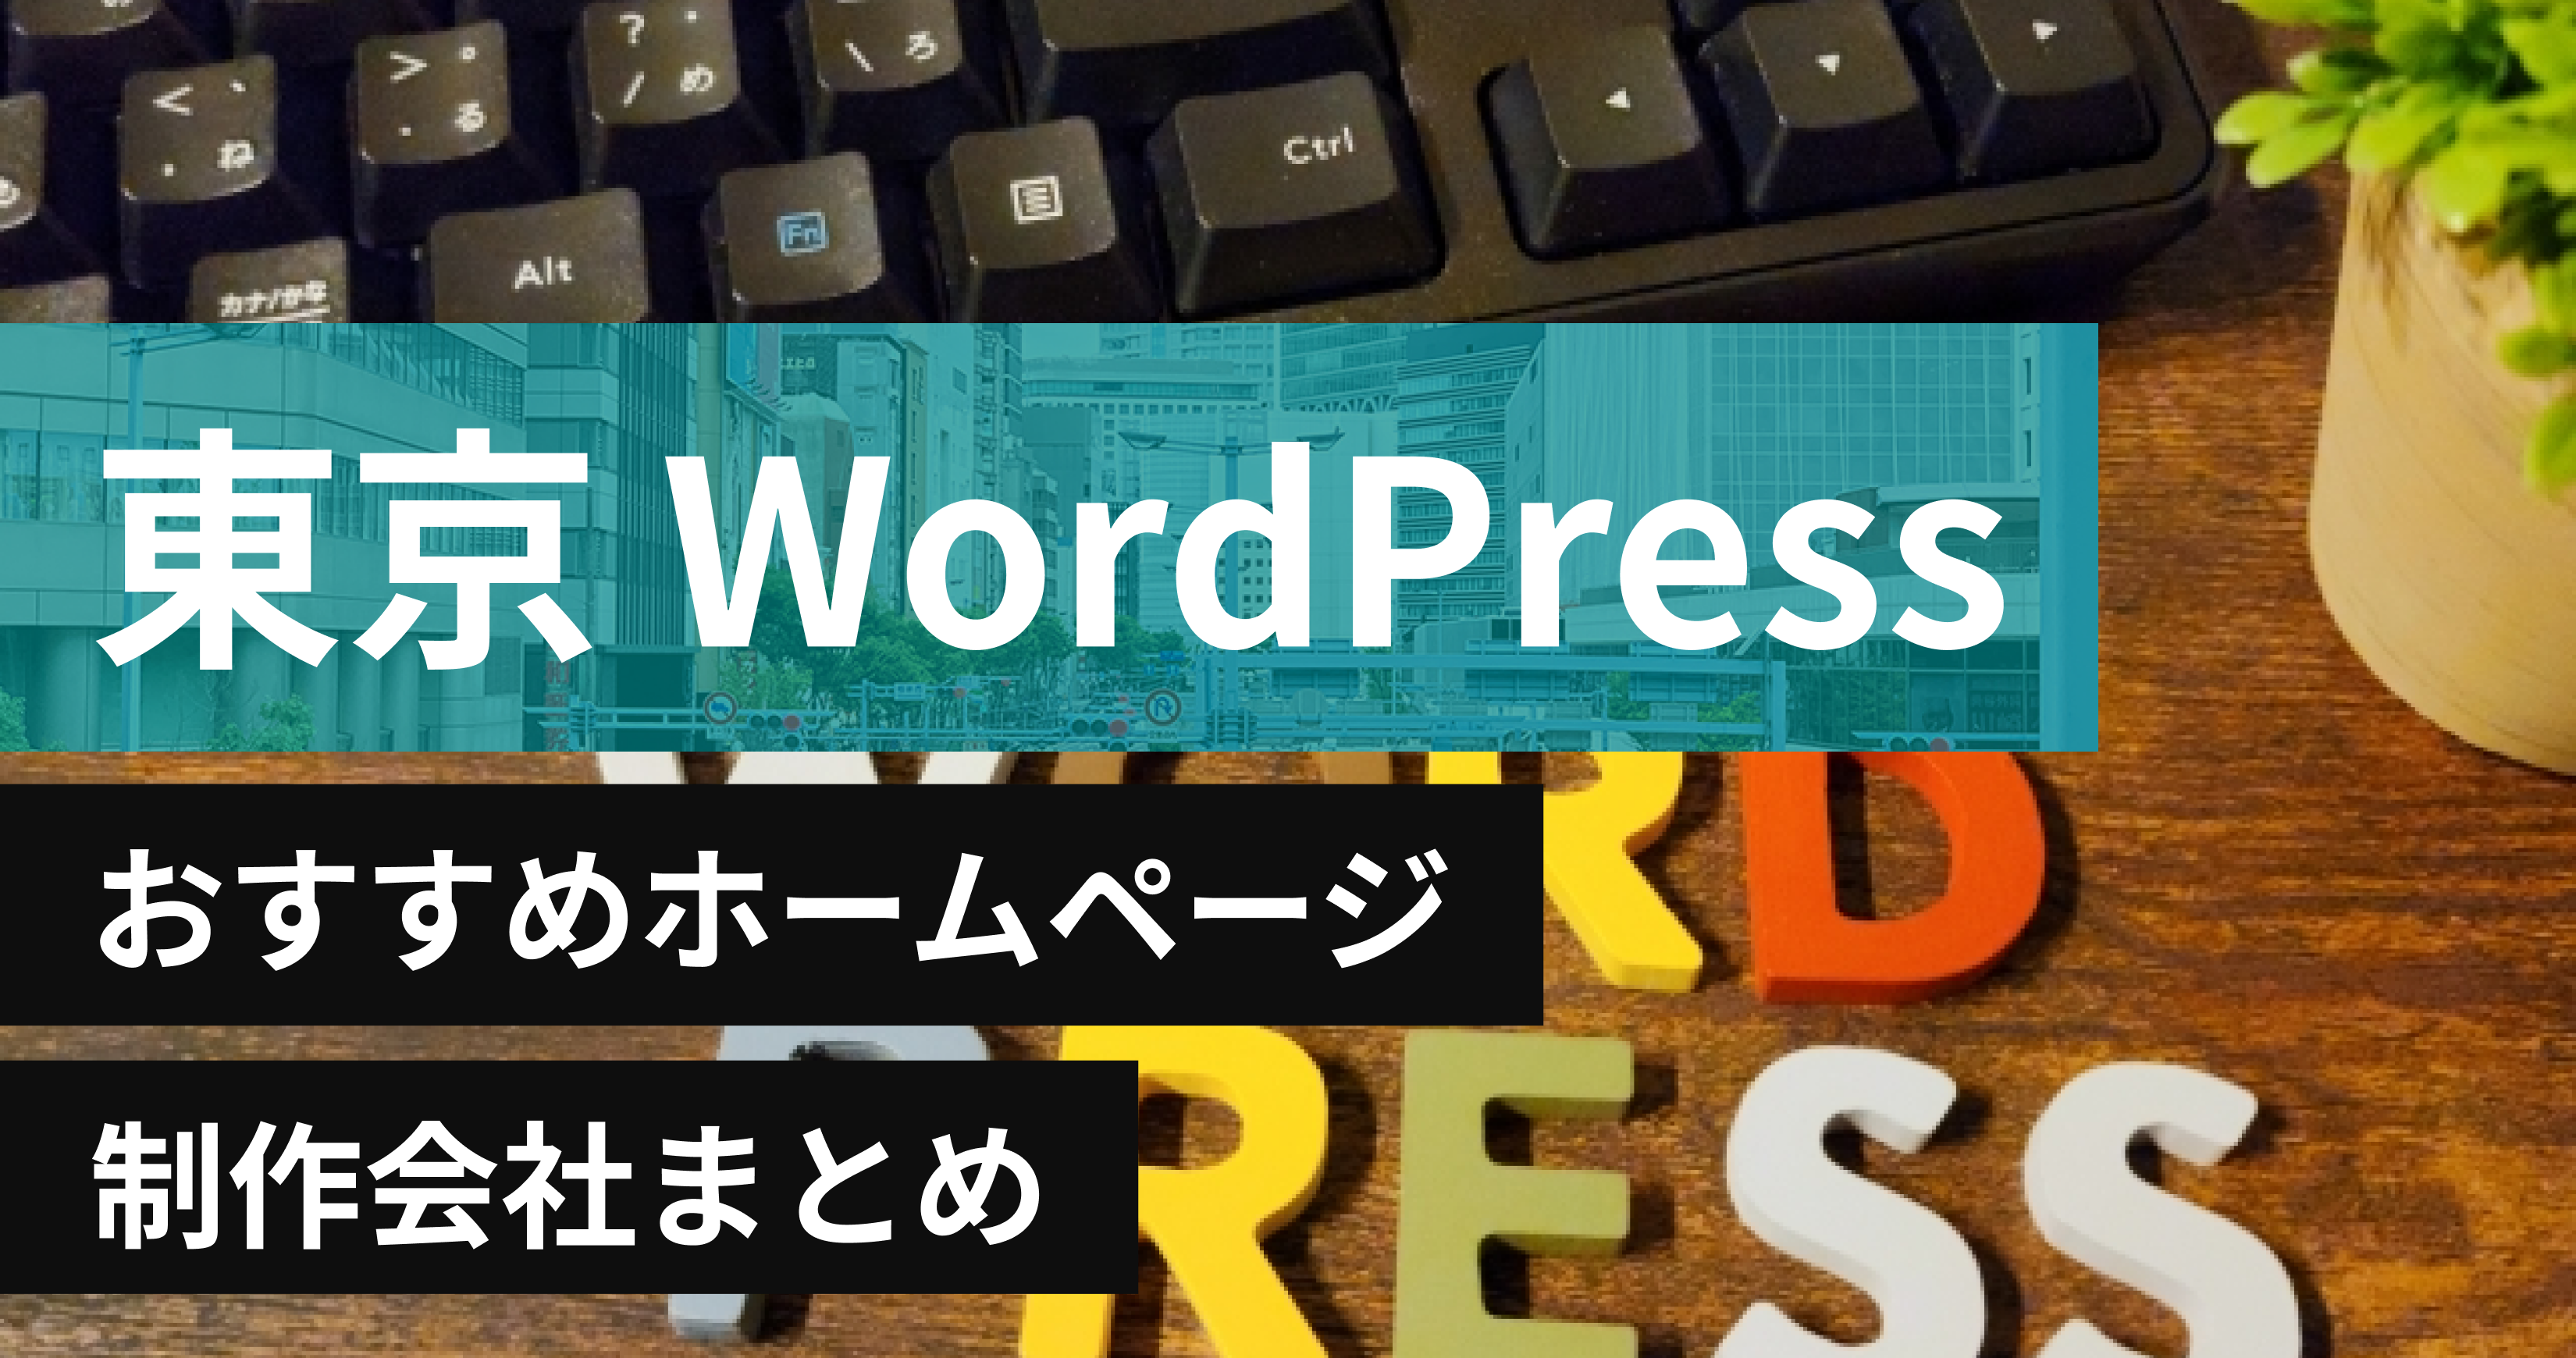 東京のWordPressに強いおすすめホームページ制作会社6